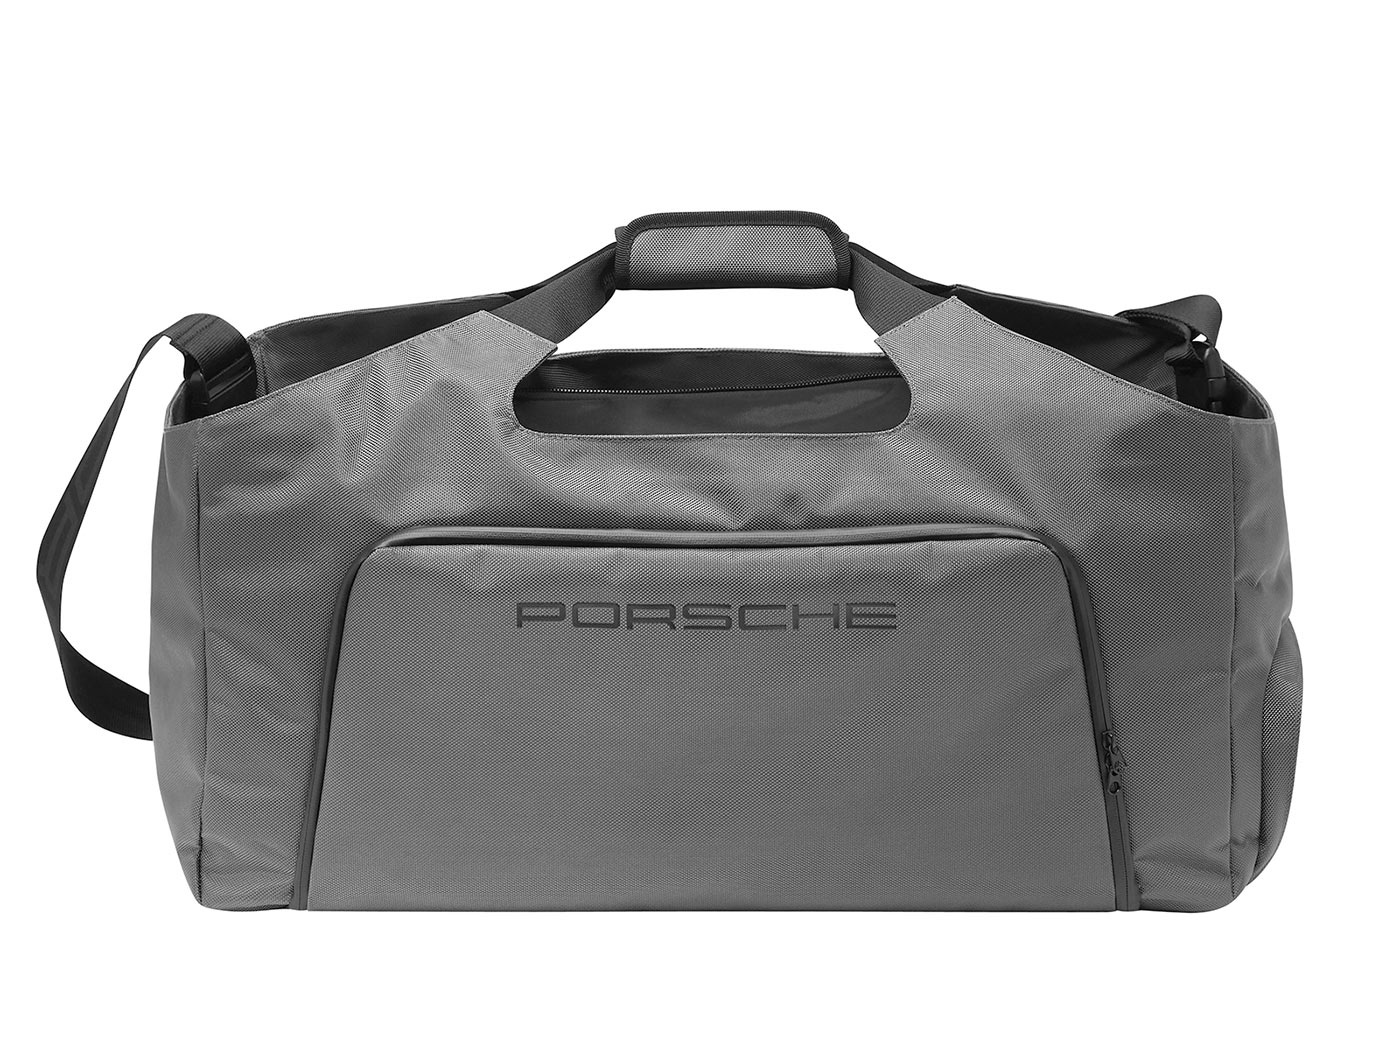 apparel soft goods Porsche sports luggage luggage rkellenberger tennis bag Travel bag sports bags backpack Waist bag Belt Bag nylon Rucksack